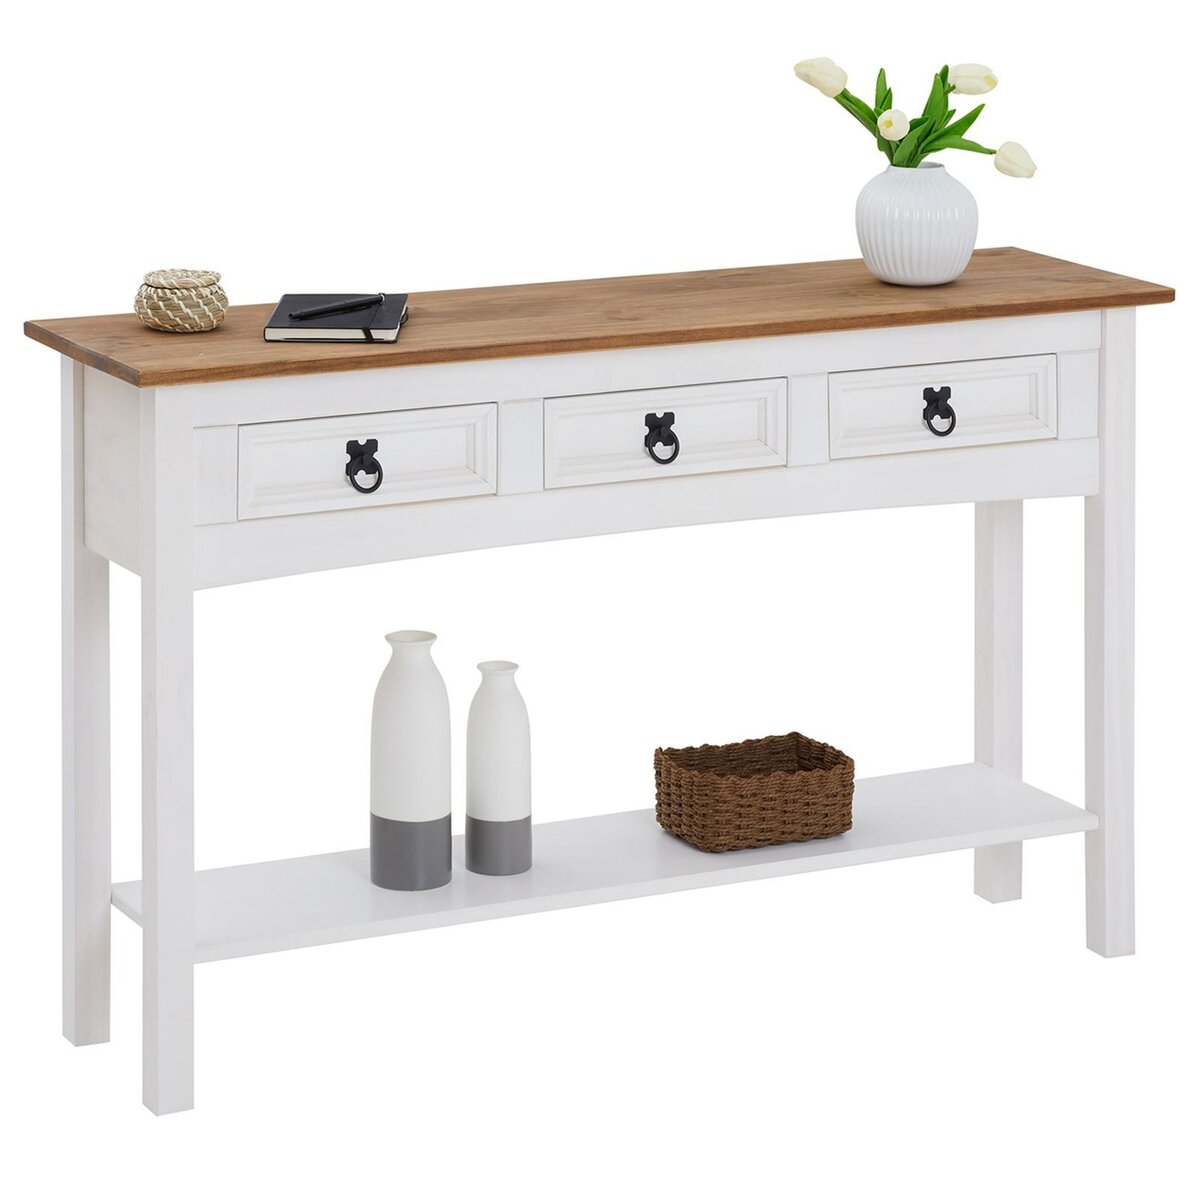 IDIMEX Table console CAMPO table d'appoint en pin massif blanc et brun avec 3 tiroirs et 1 étagère, meuble d'entrée en bois